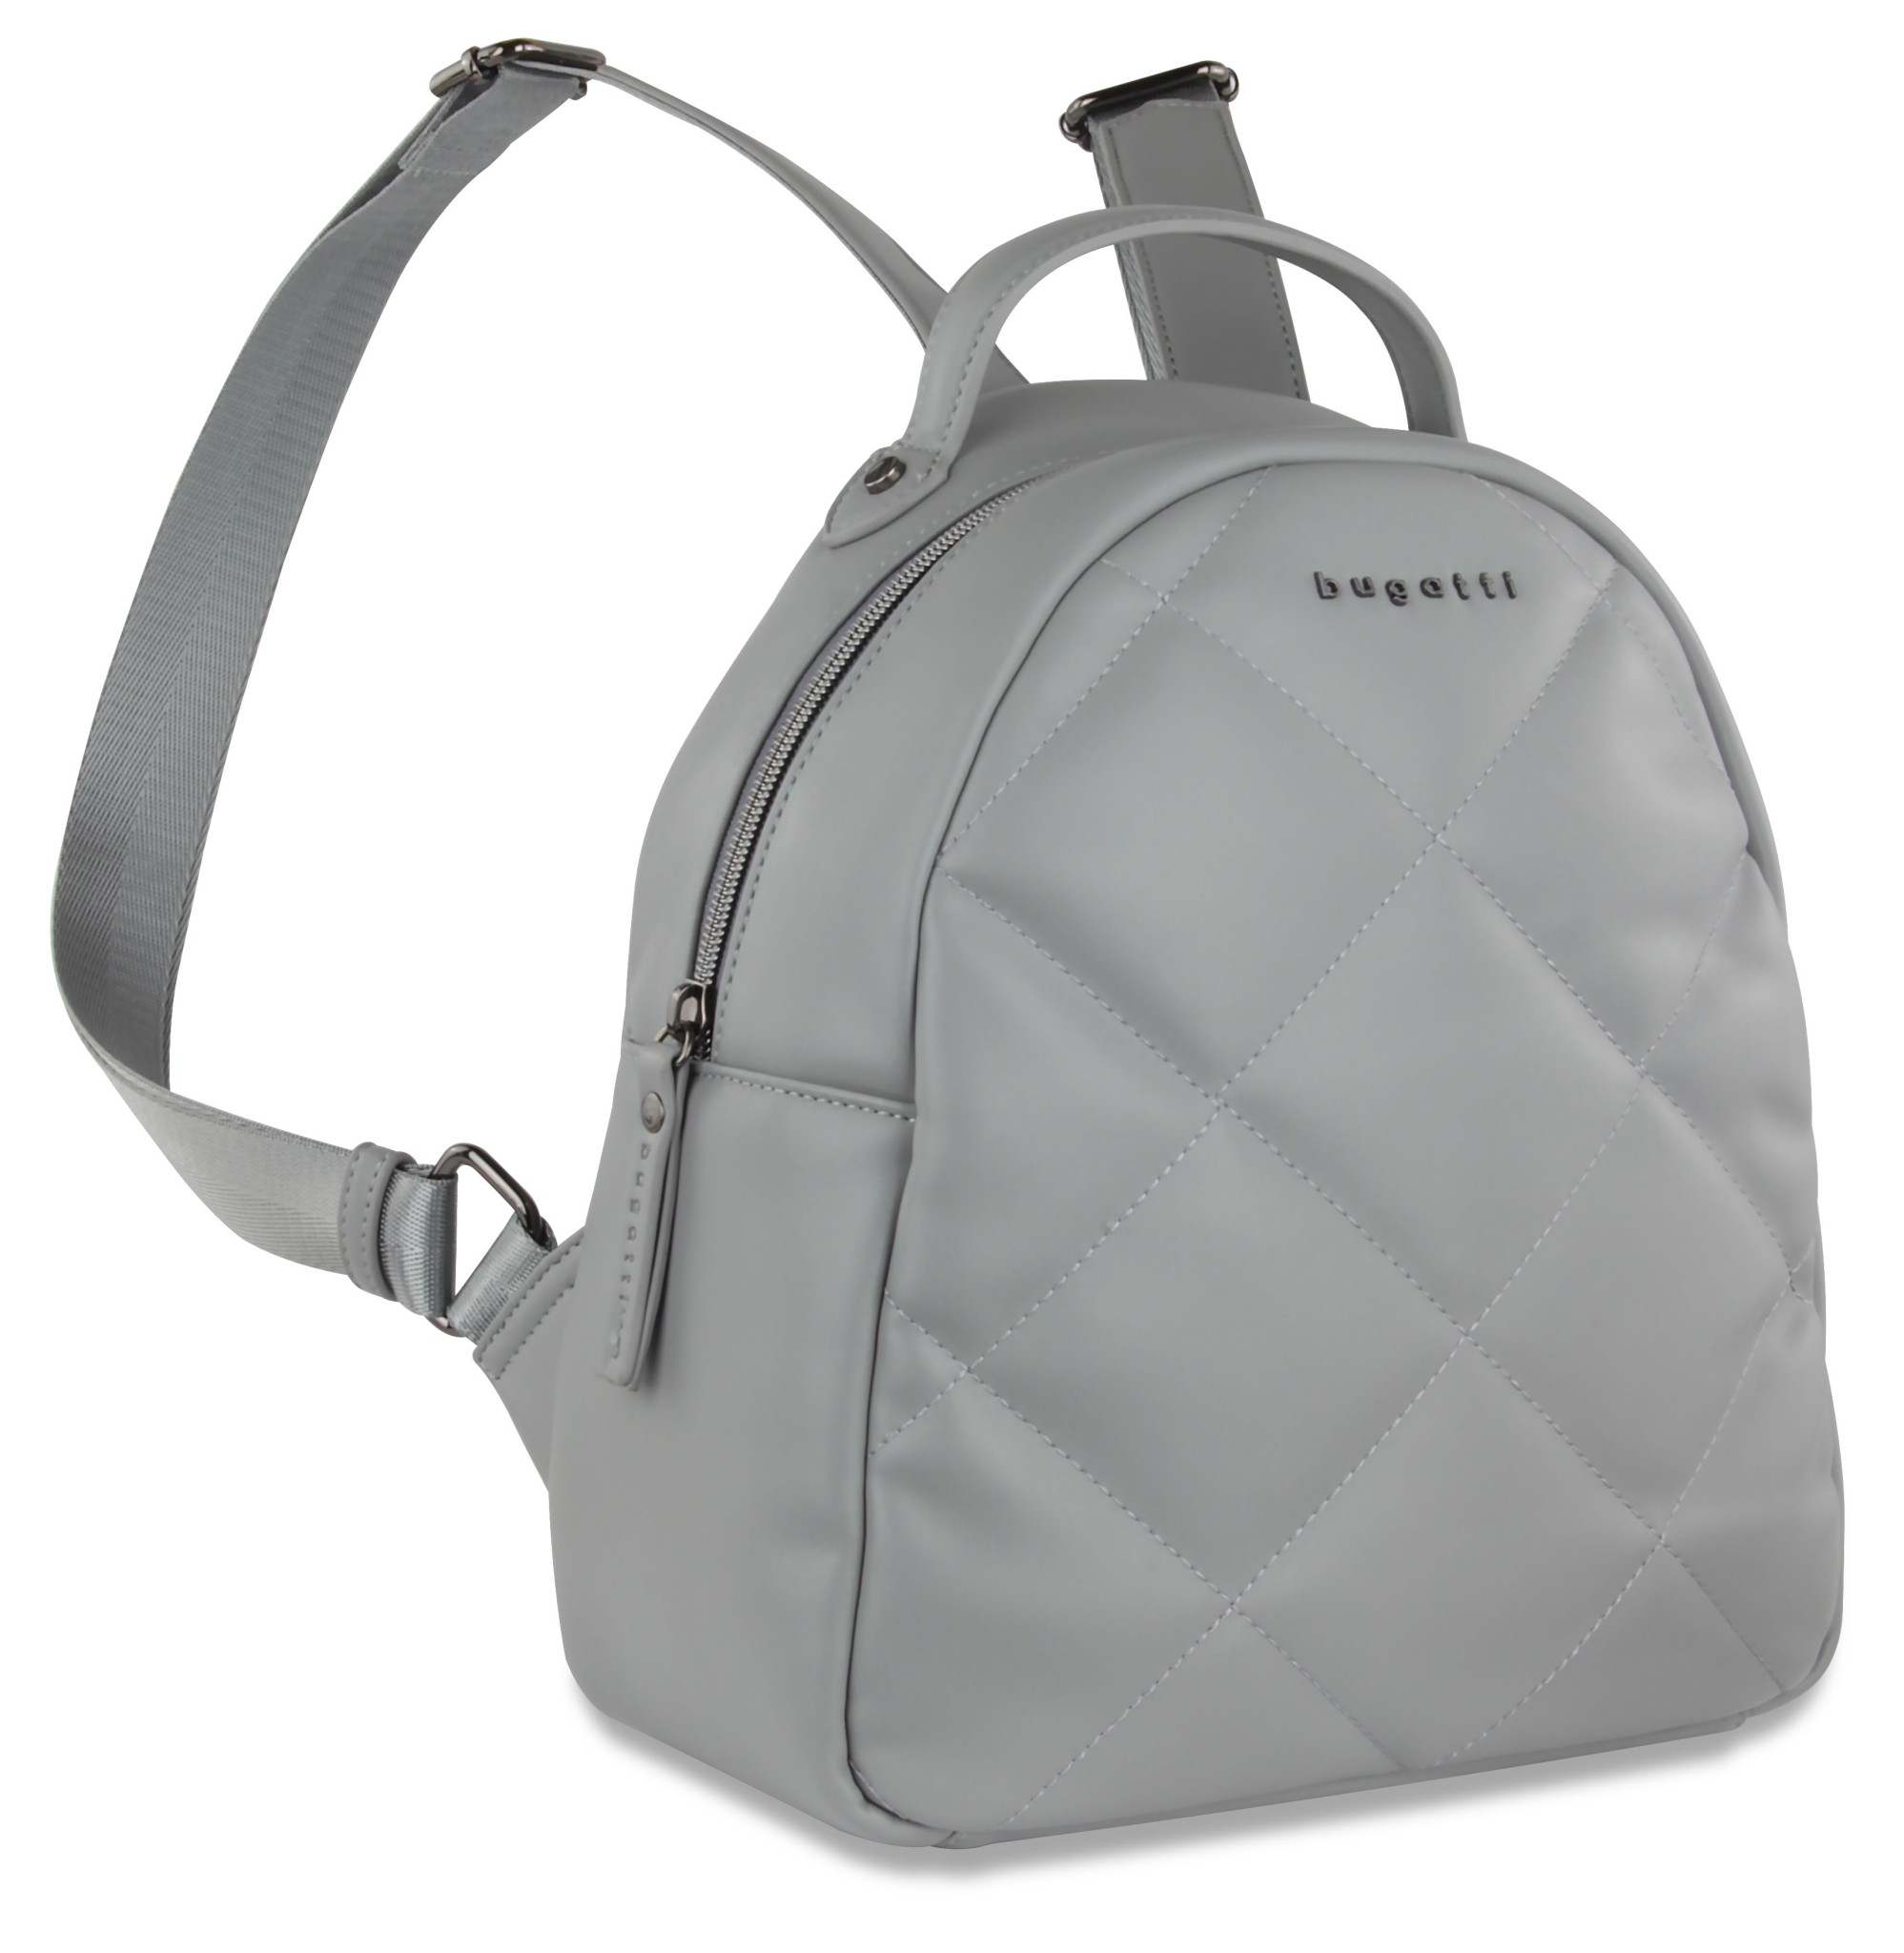 Рюкзак женский BUGATTI Cara, серый, полиуретан, 25,5х11х27,5 см, 7 л, серый